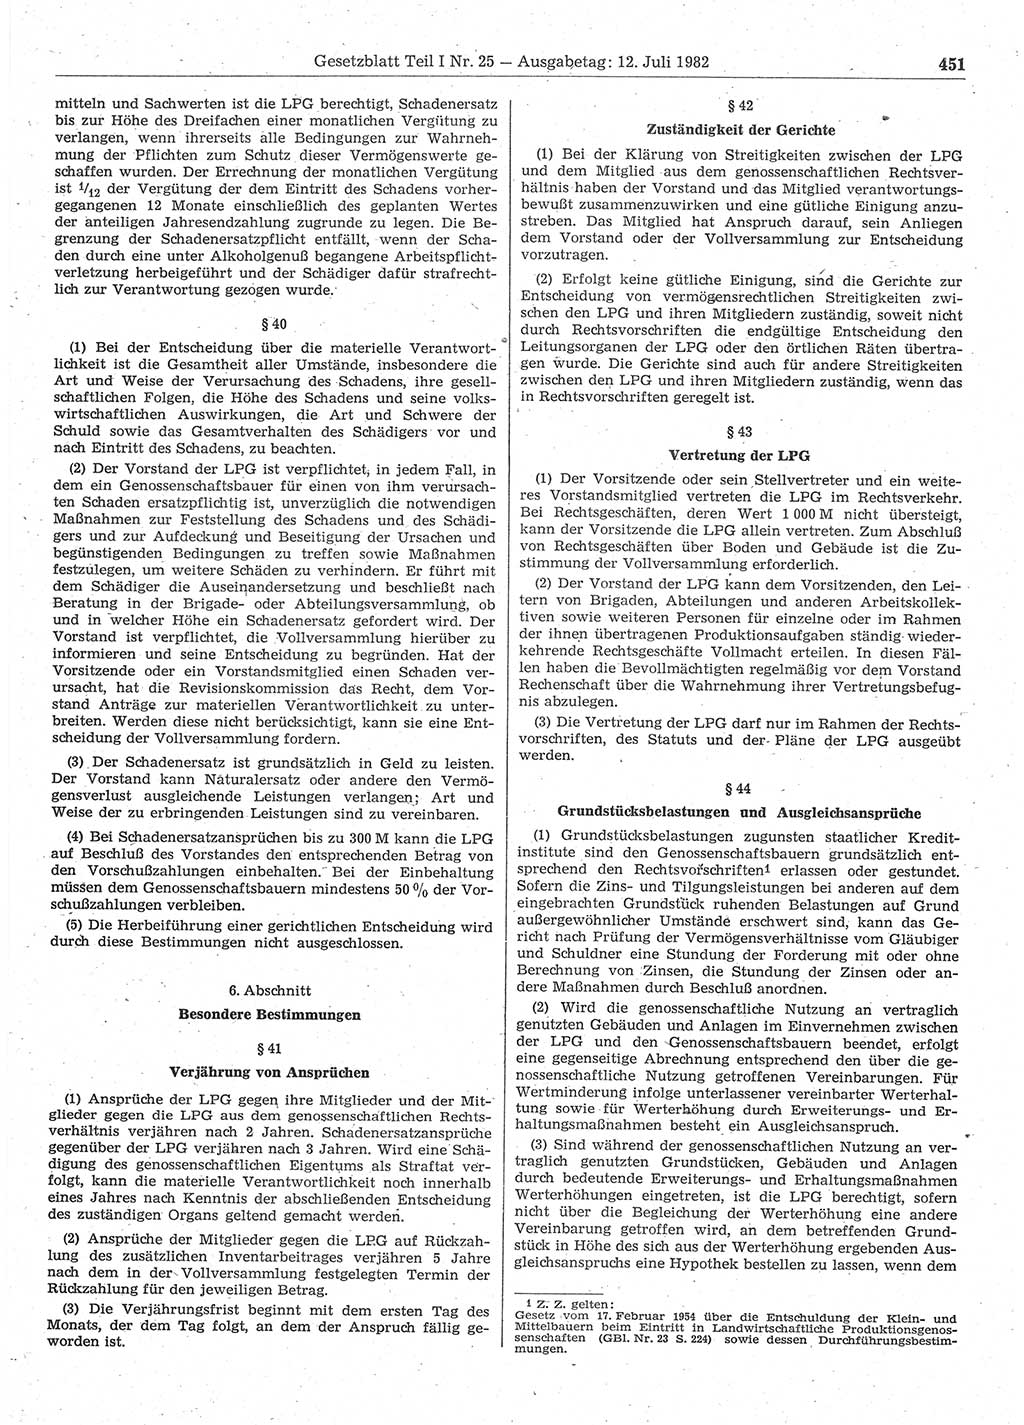 Gesetzblatt (GBl.) der Deutschen Demokratischen Republik (DDR) Teil Ⅰ 1982, Seite 451 (GBl. DDR Ⅰ 1982, S. 451)